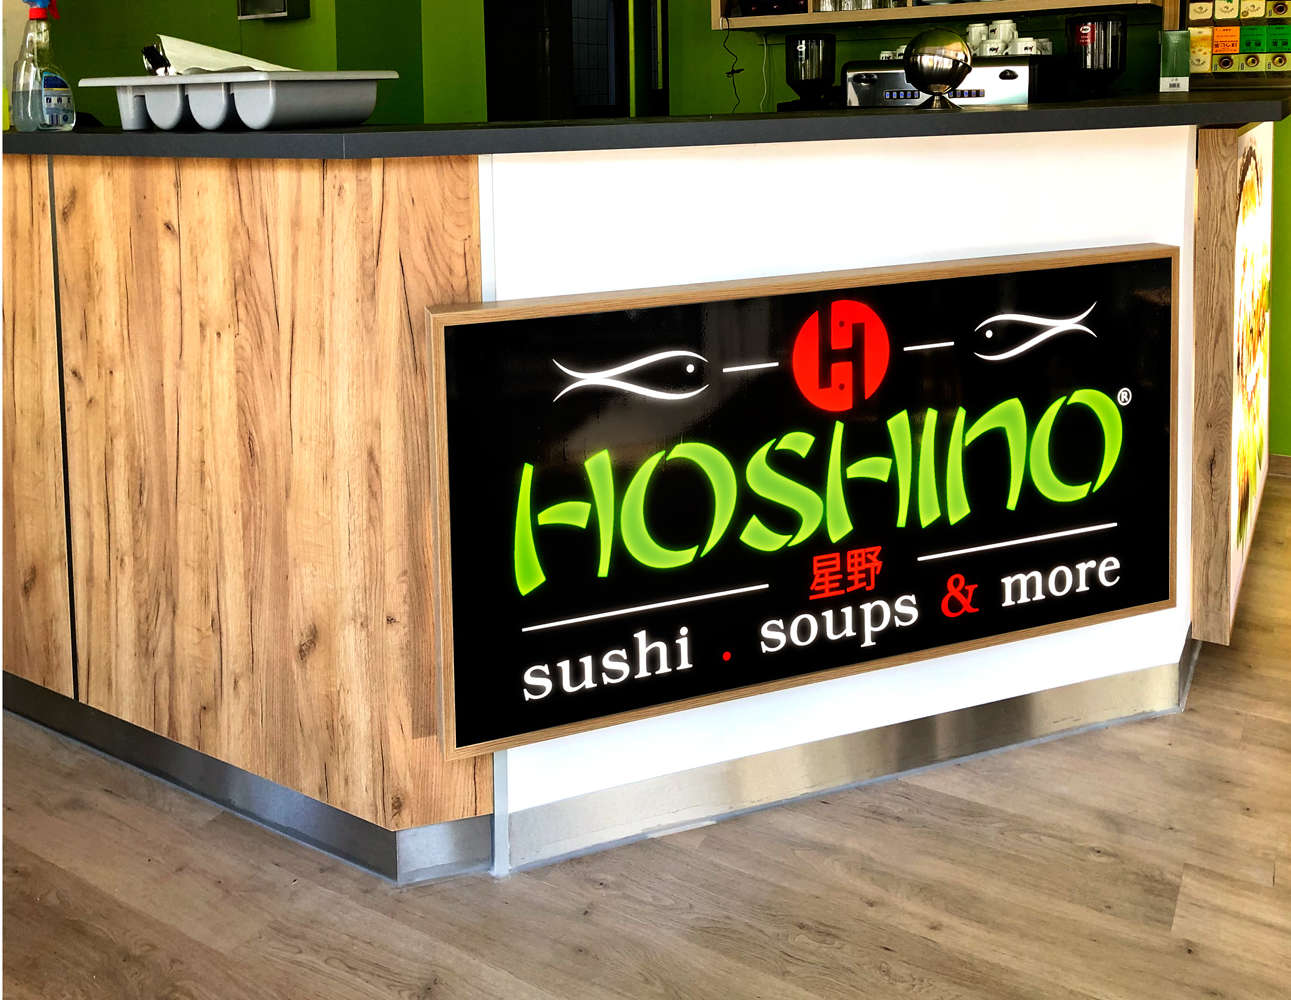 Hoshino Sushi in Dortmund